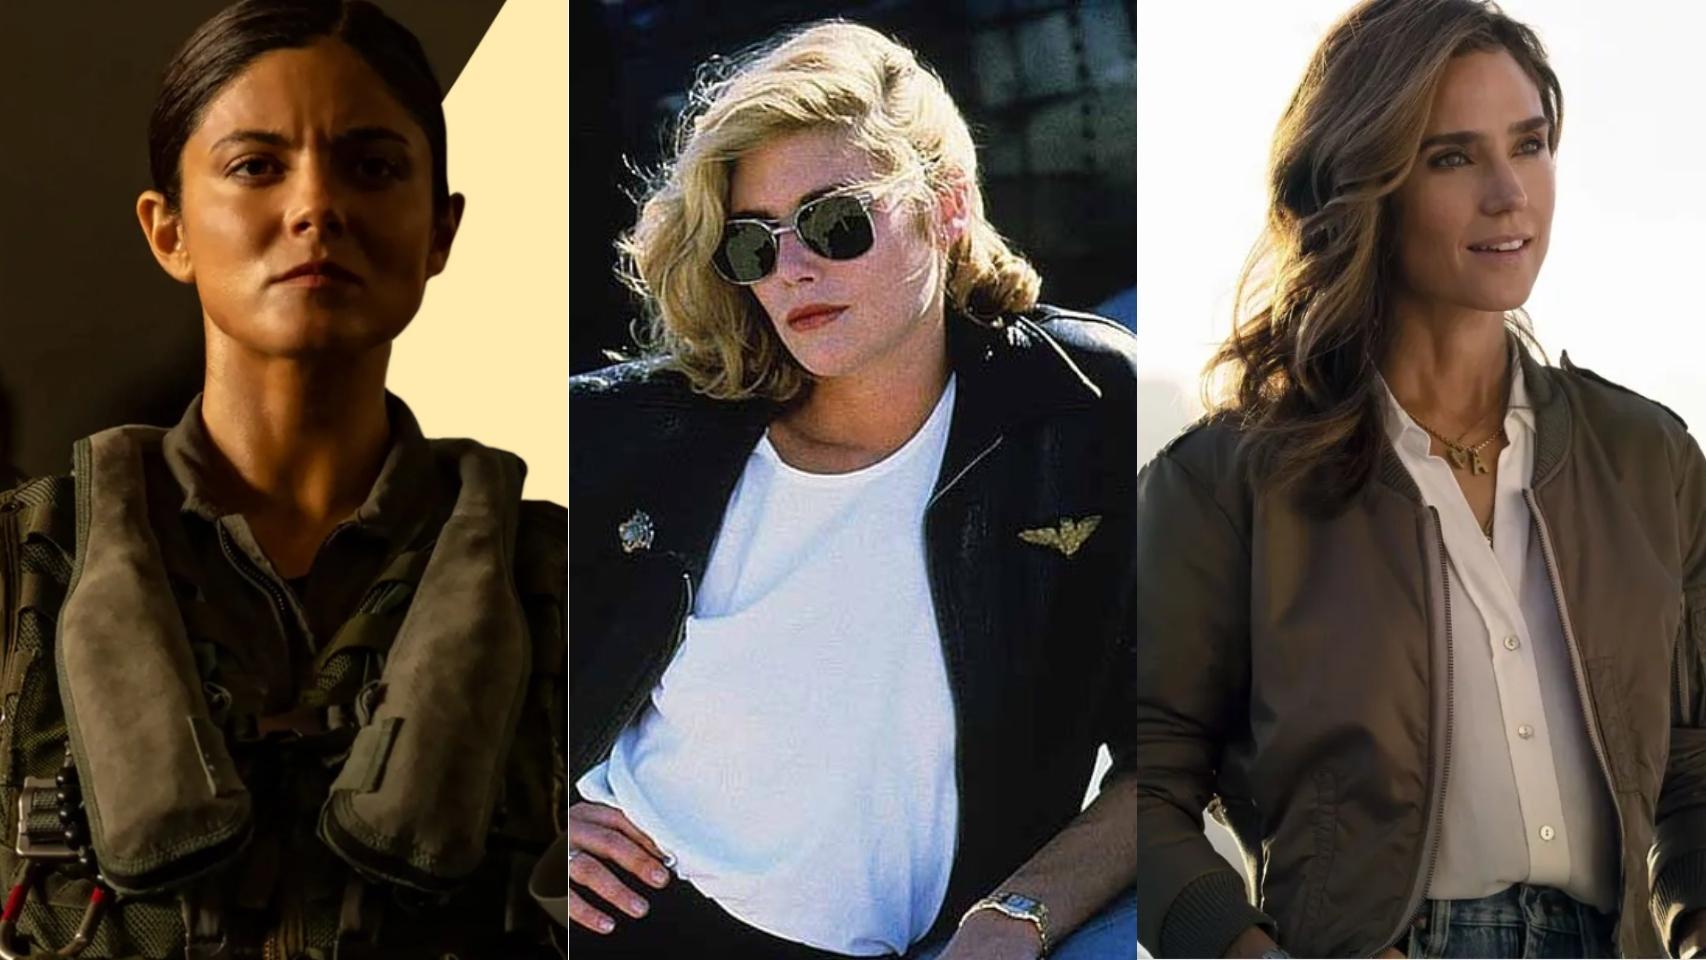 Top Gun Maverick y las mujeres, ¿una cuenta saldada? analizamos los personajes femeninos imagen